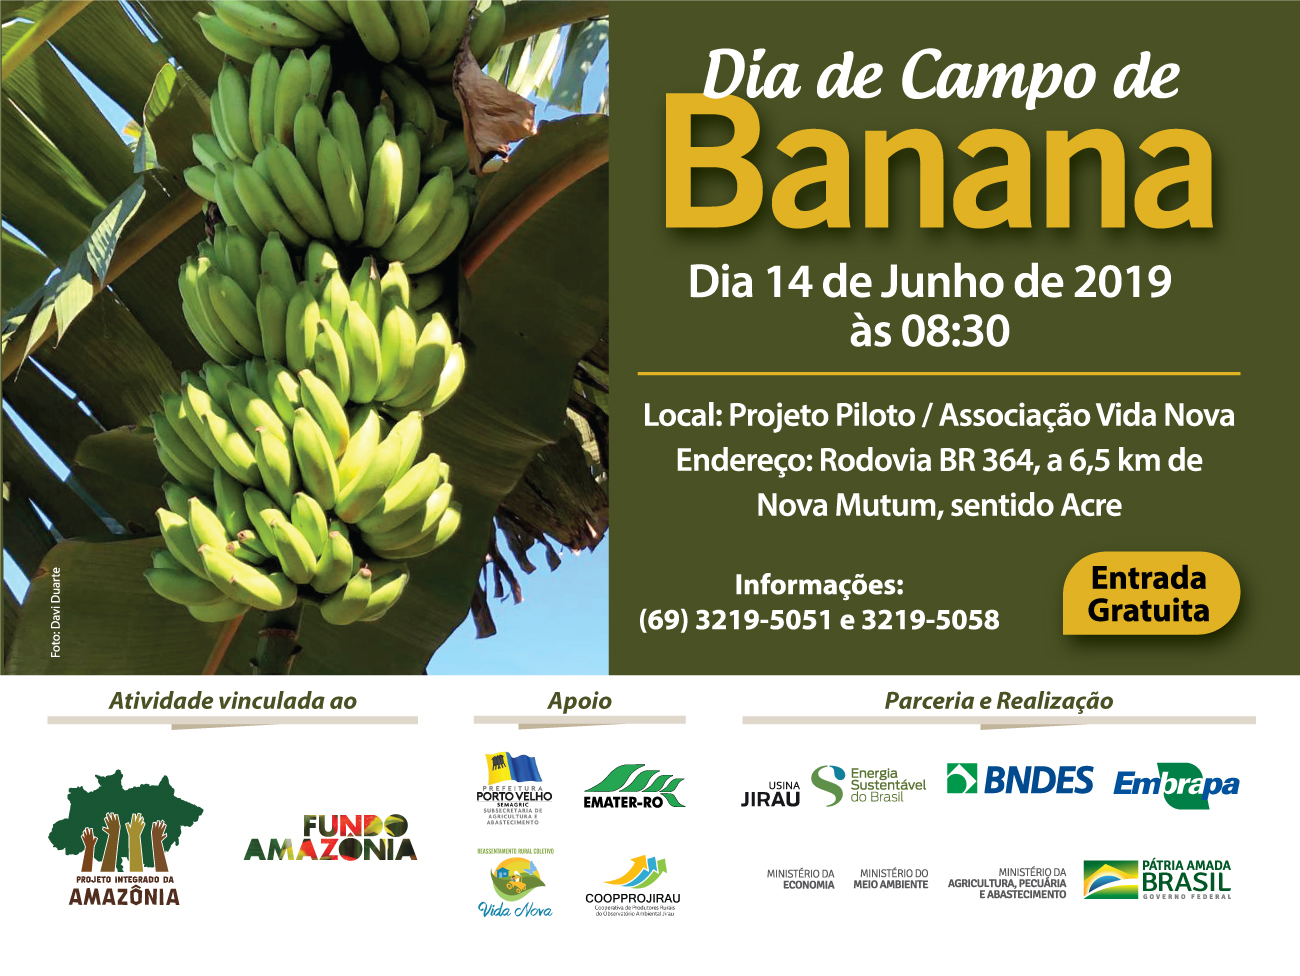 DIA DE CAMPO DE BANANA ACONTECE DIA 14 DE JUNHO, EM PORTO VELHO - News Rondônia